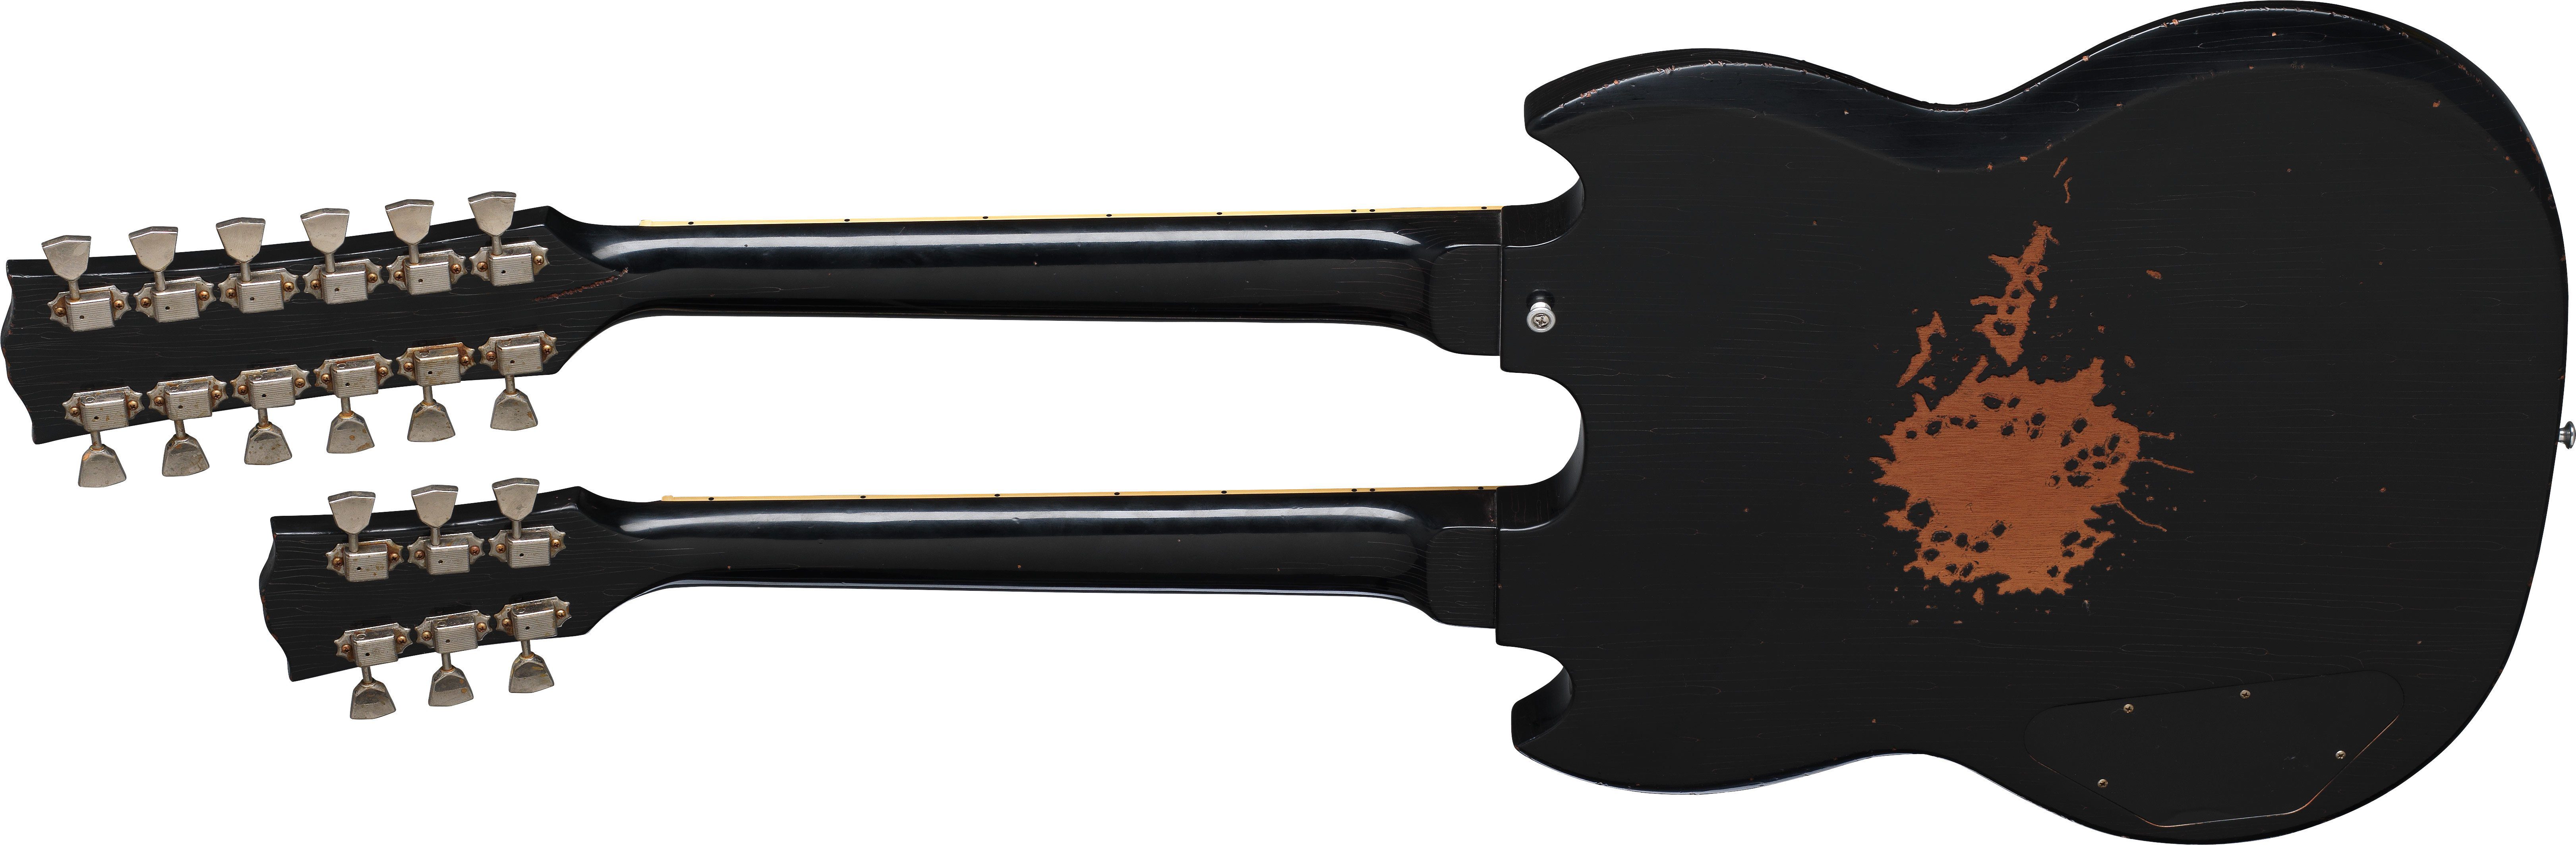 Gibson-Custom-Shop-Slash-Signed-1966-EDS-1275-Doubleneck-Replica-Aged-Ebony-back